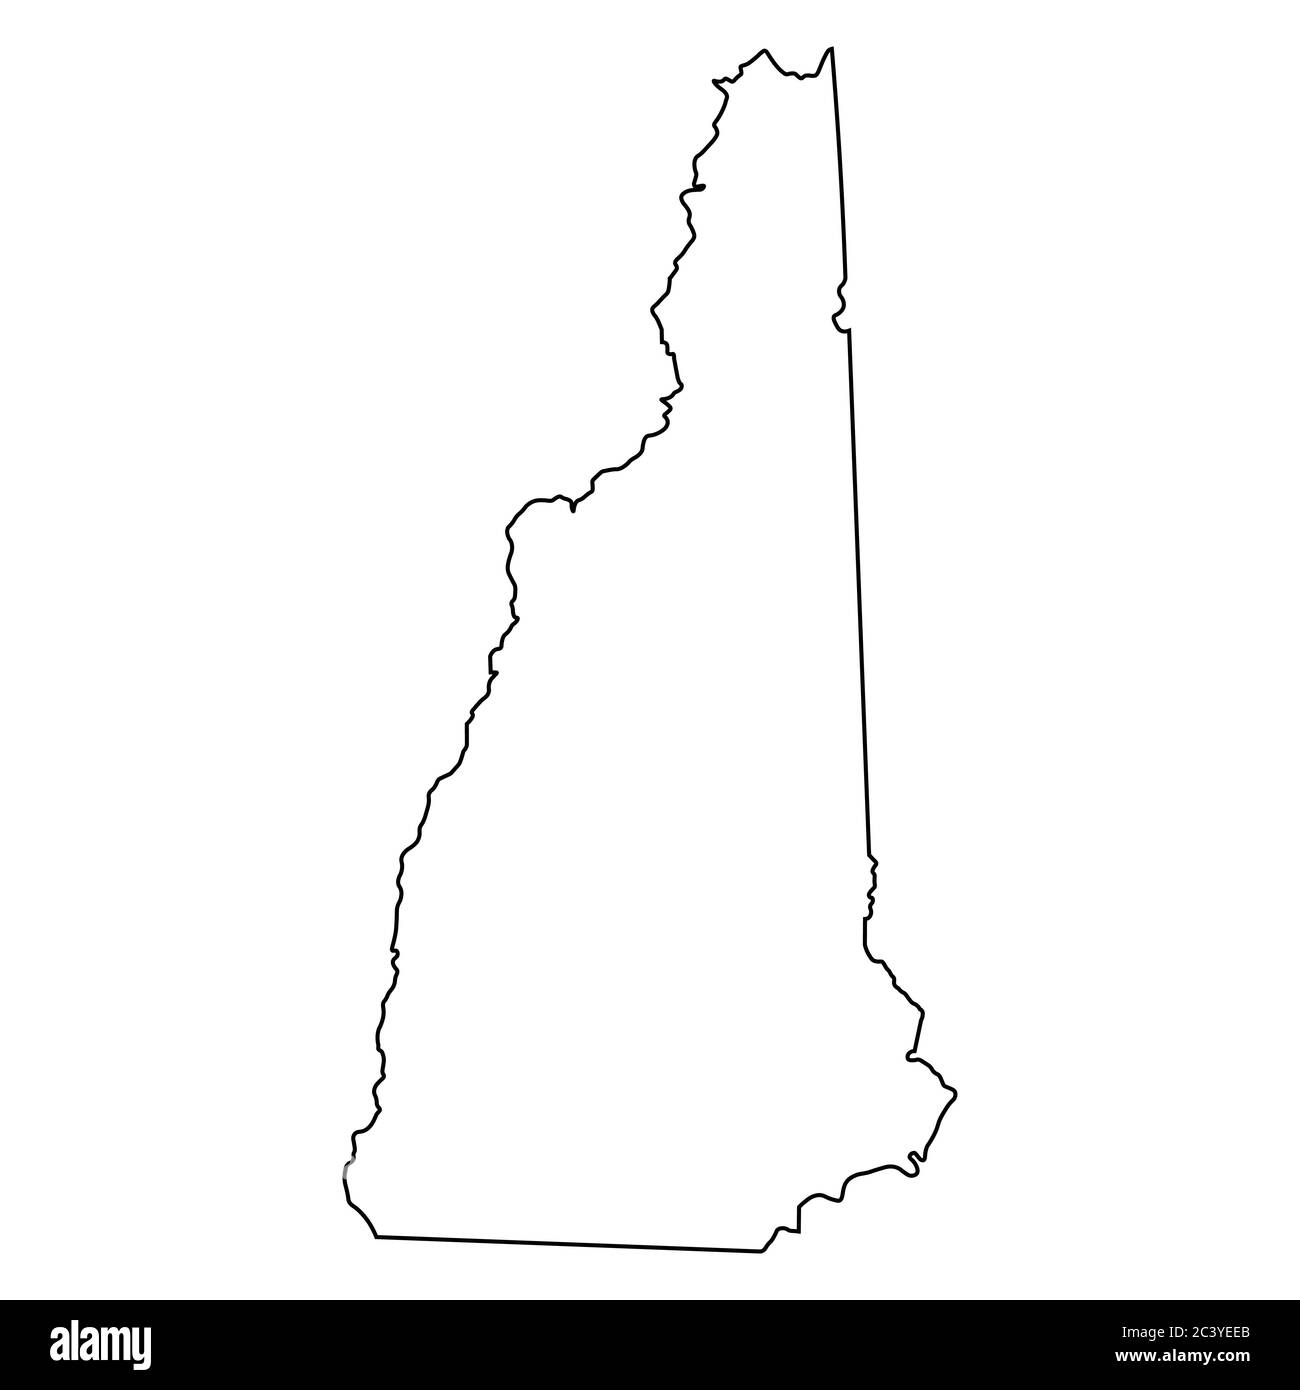 Cartes de l'état NH du New Hampshire. Carte de contour noire isolée sur fond blanc. Vecteur EPS Illustration de Vecteur